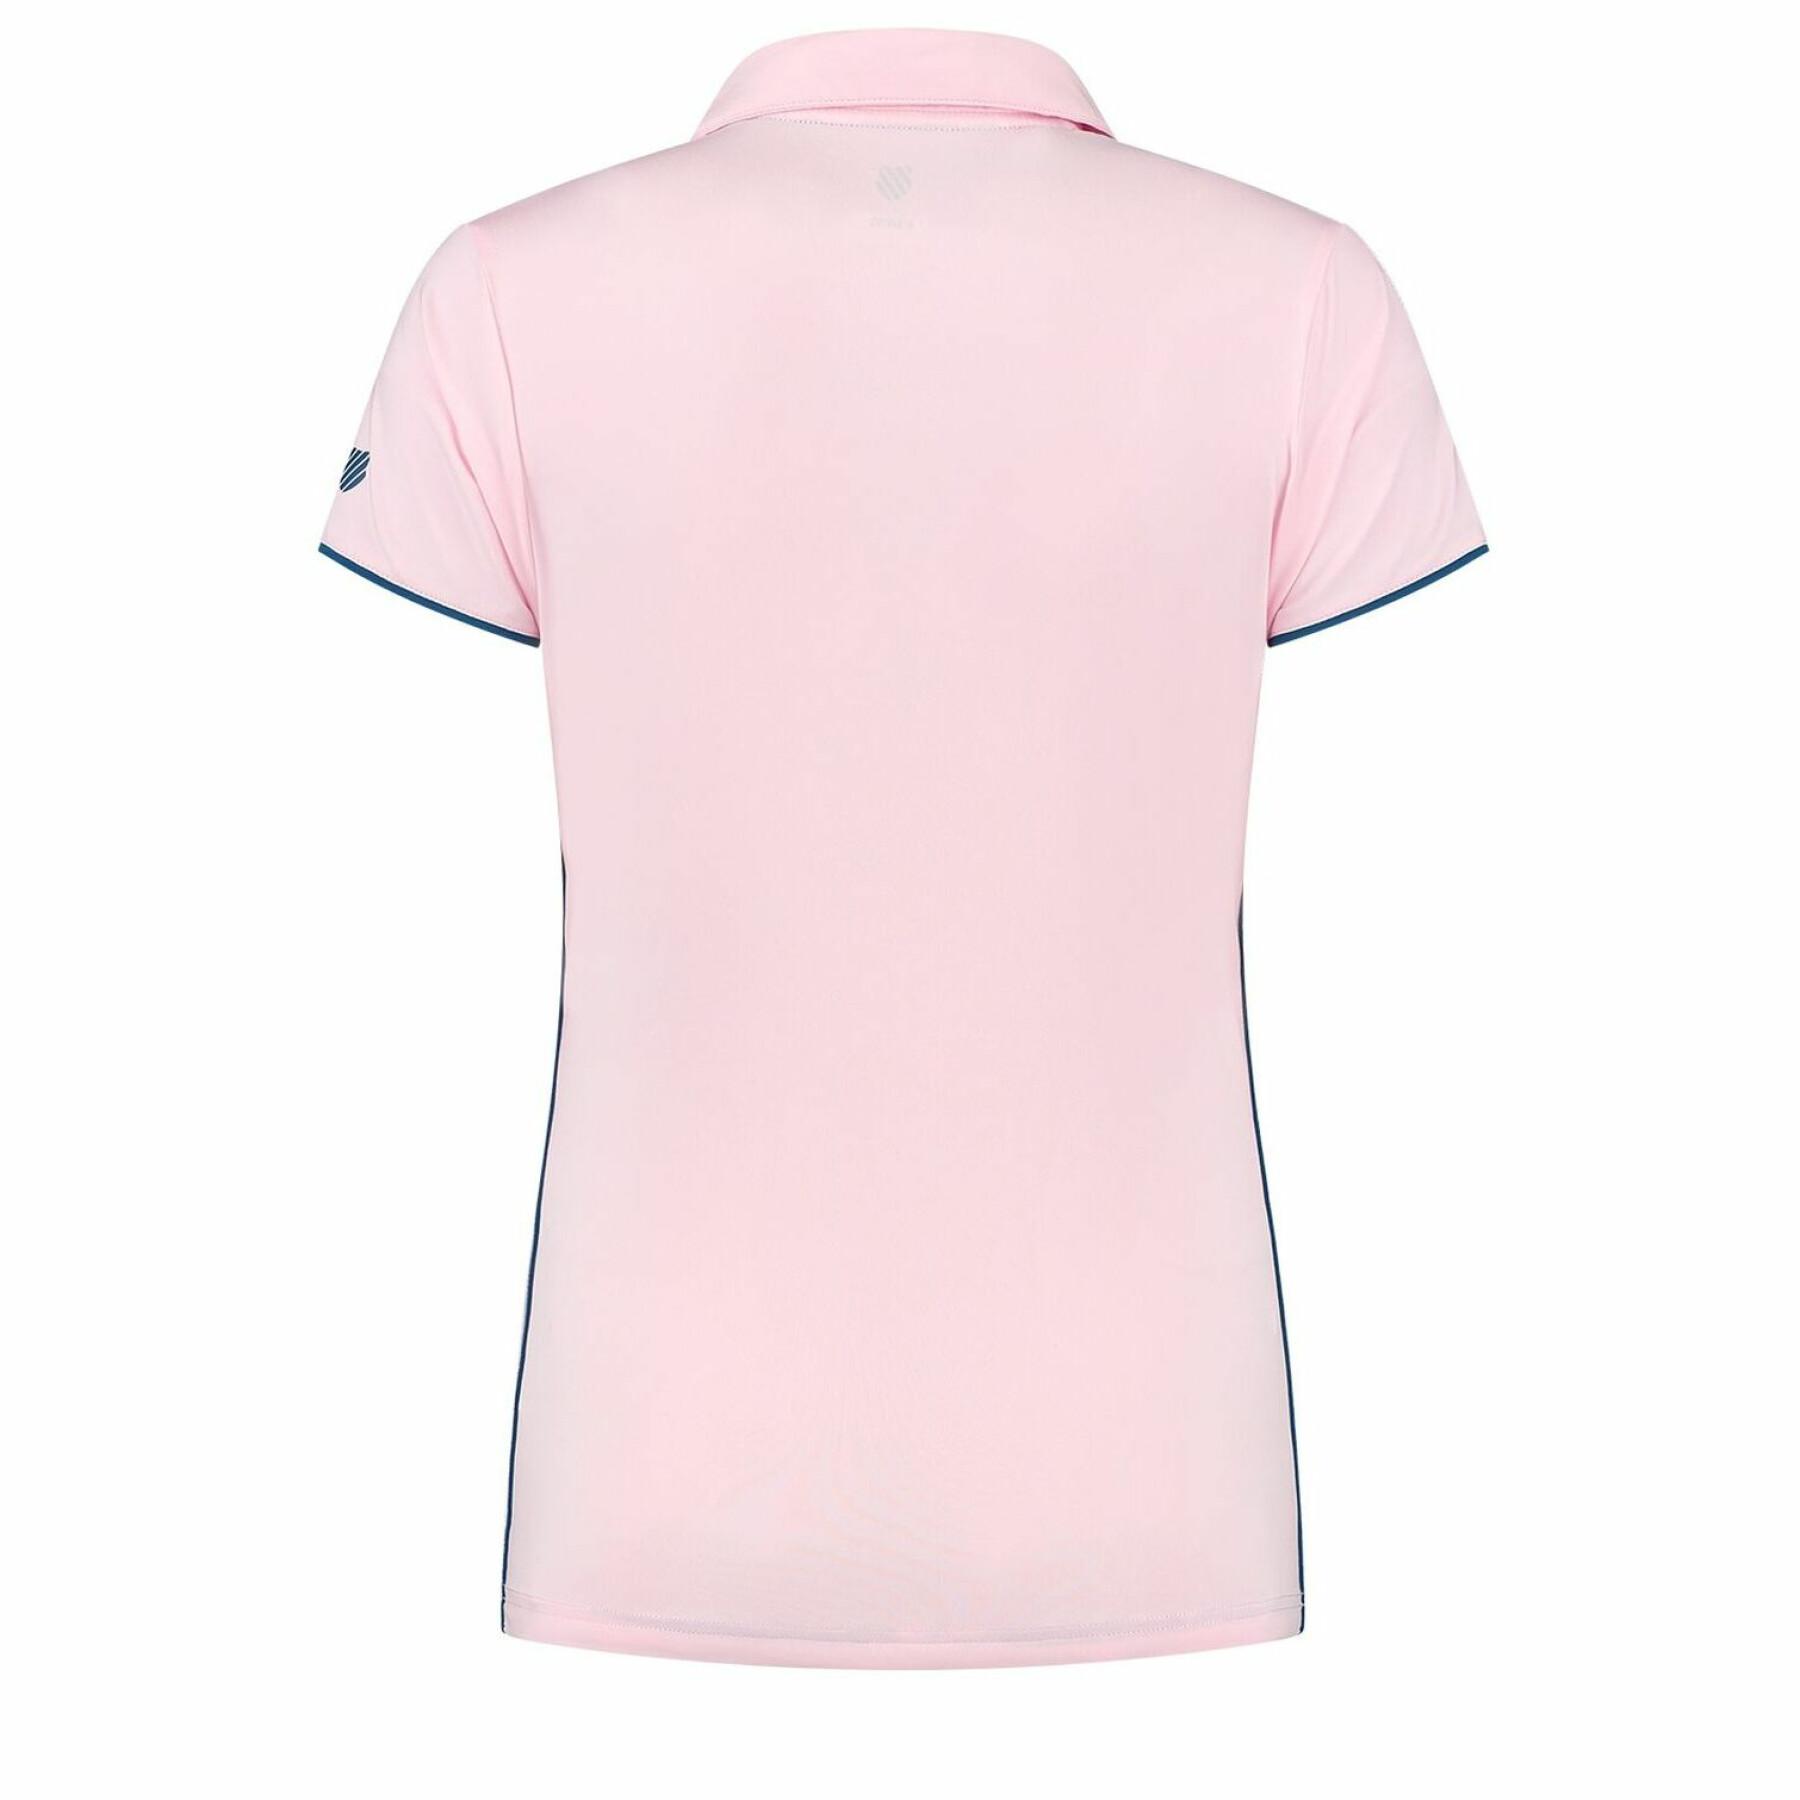 Women's polo shirt K-Swiss Hypercourt 4